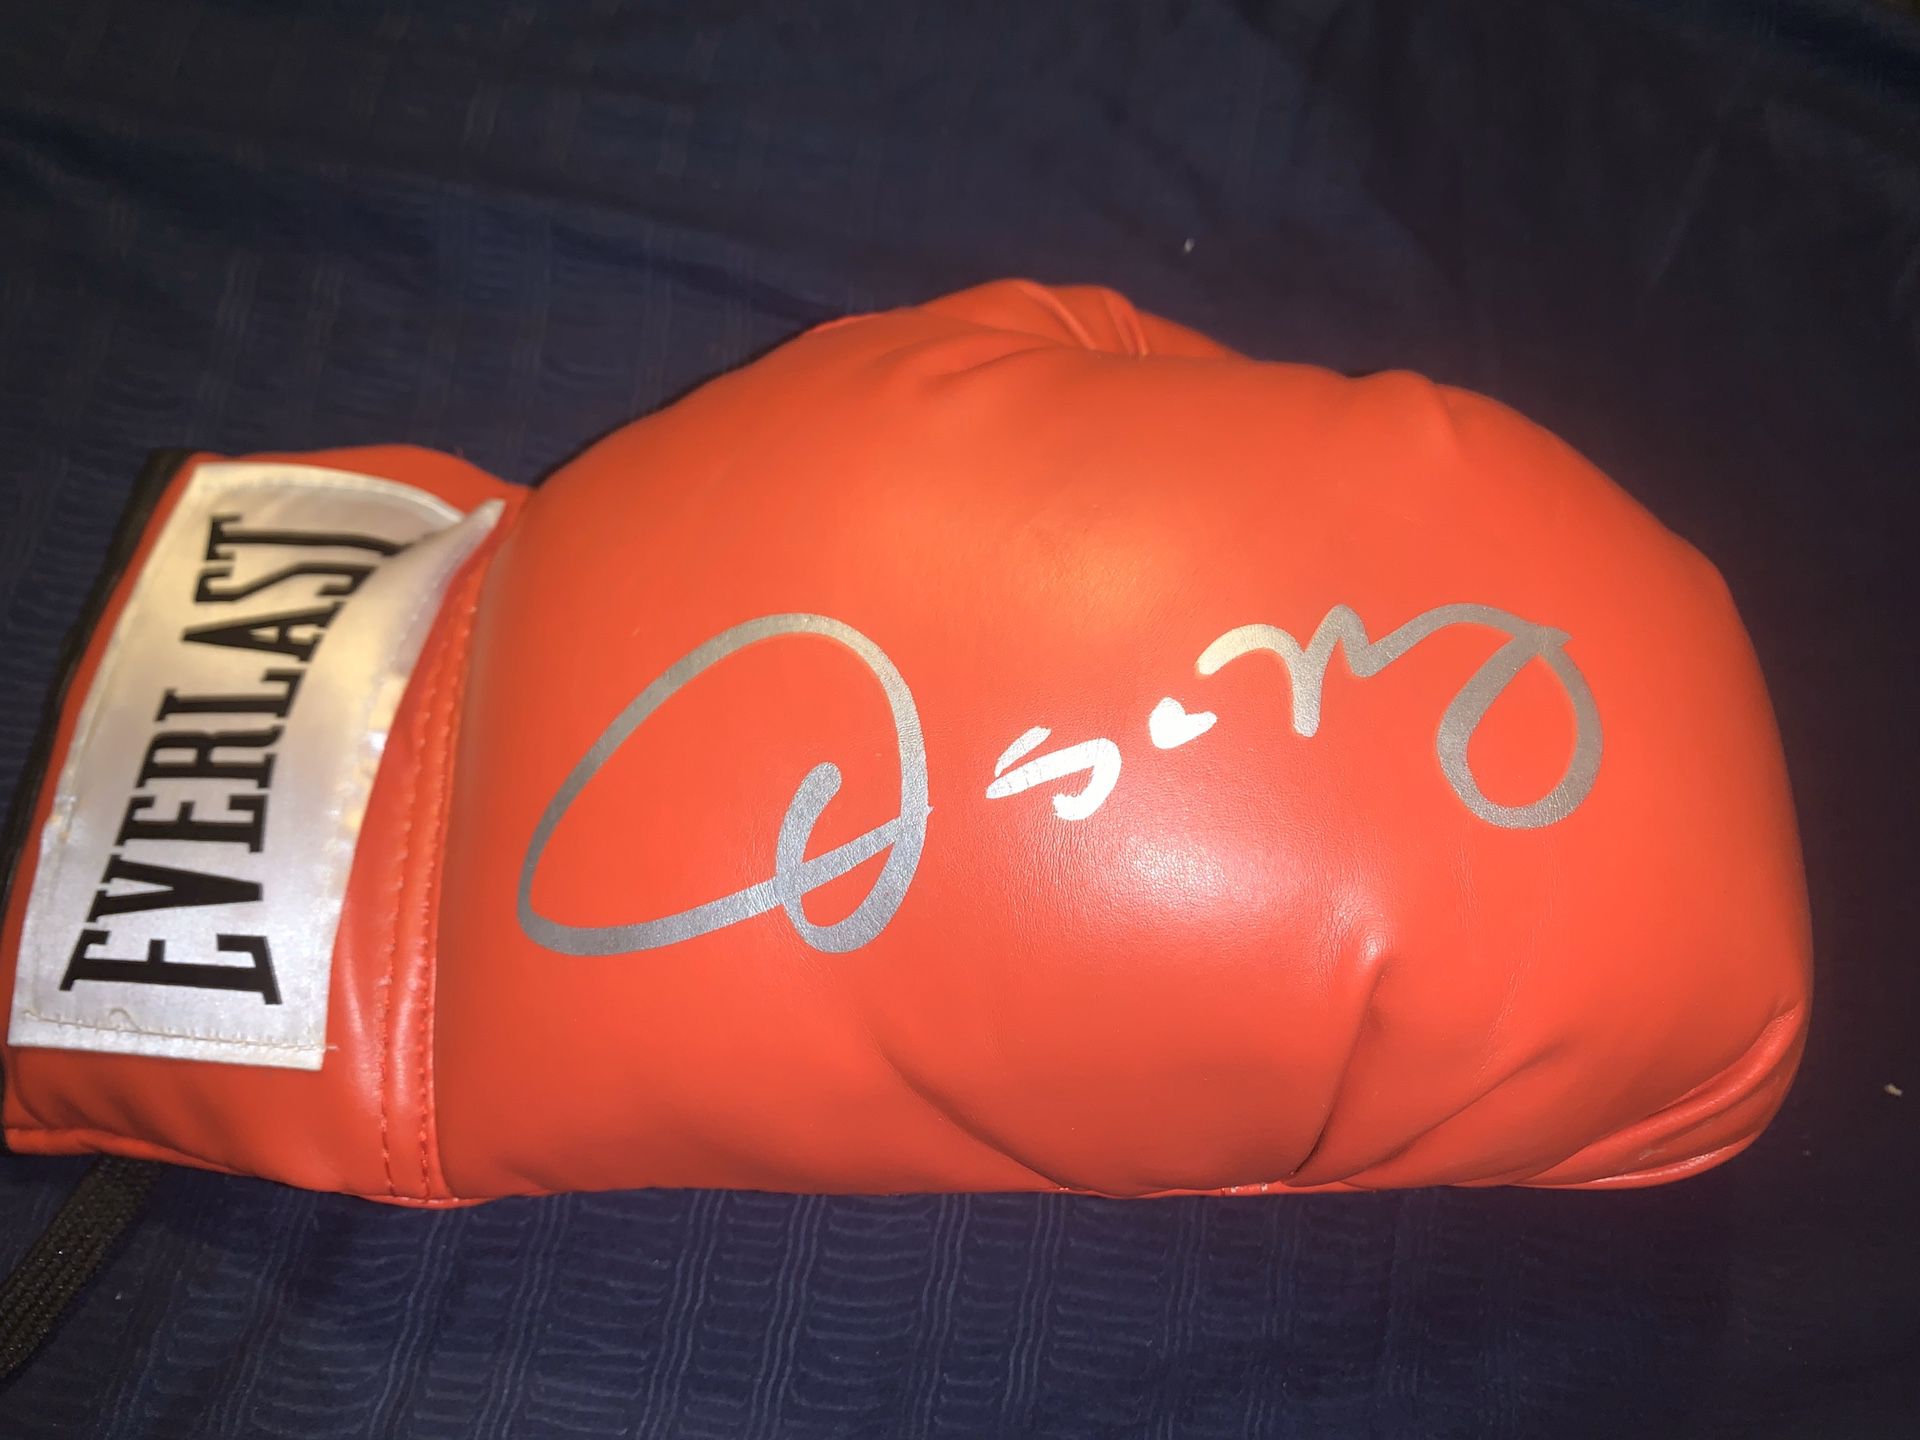 Boxing Legend Oscar De La Hoya